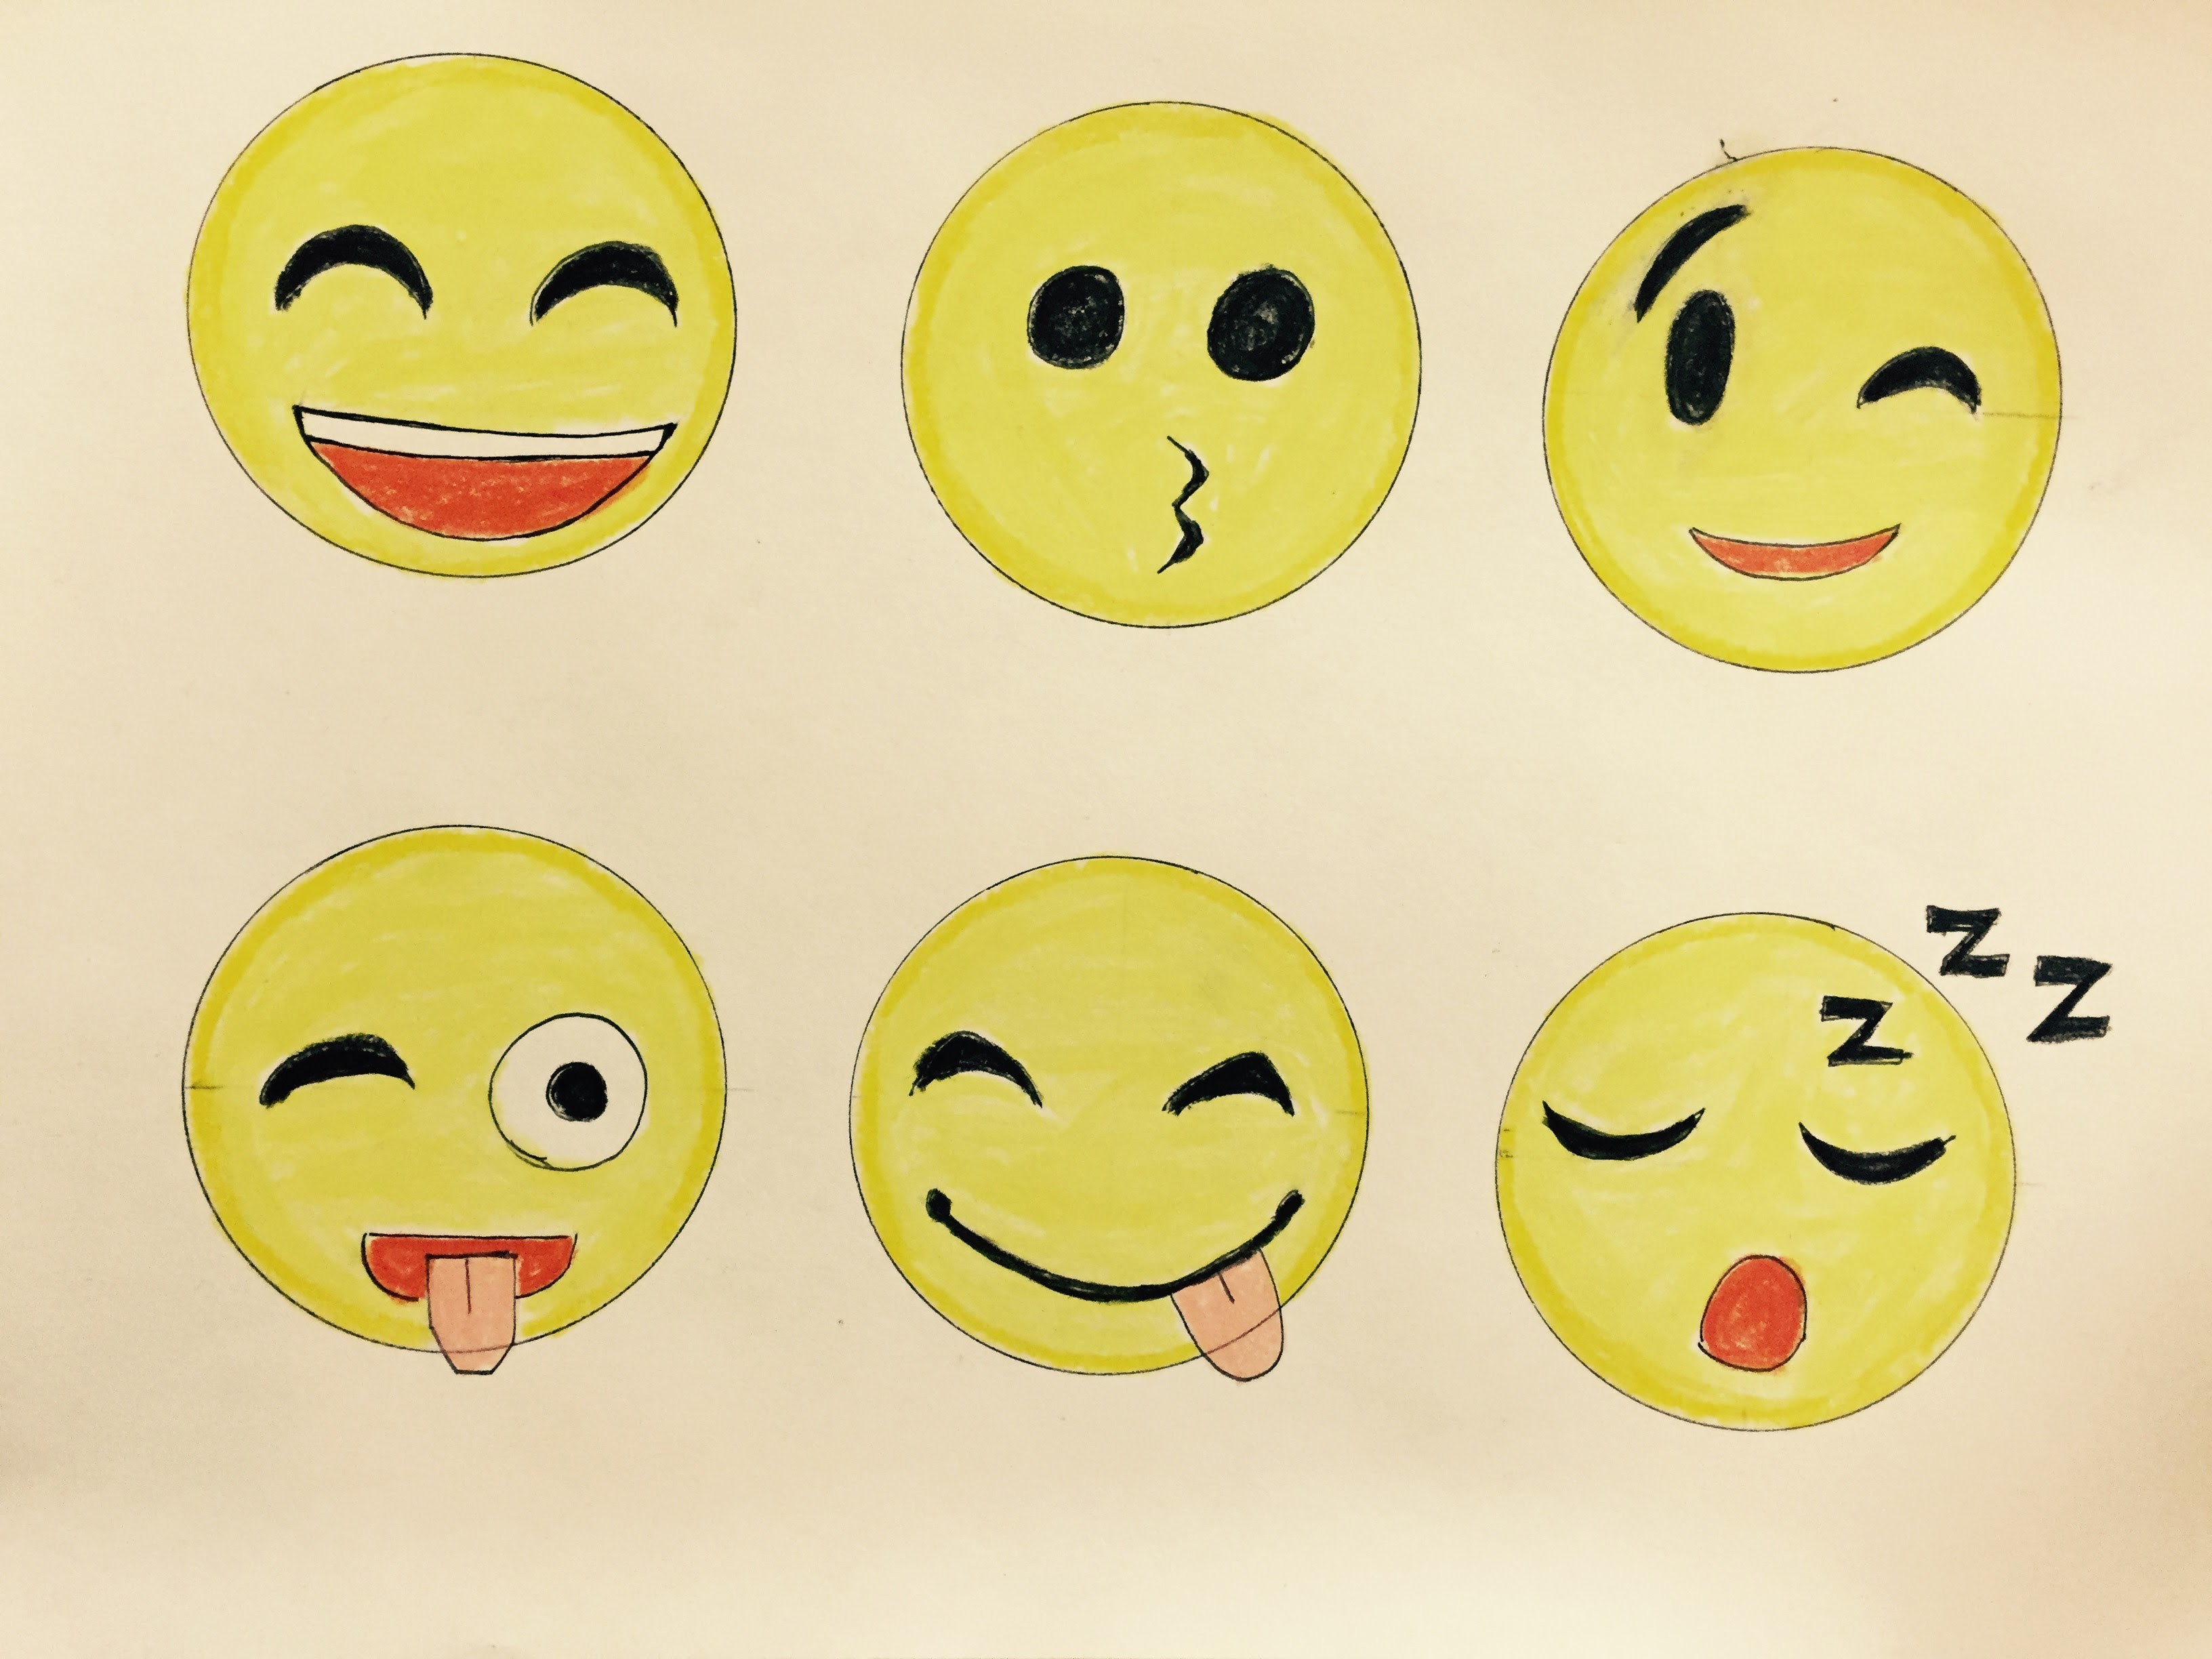 Manera de dibujar caras de emojis